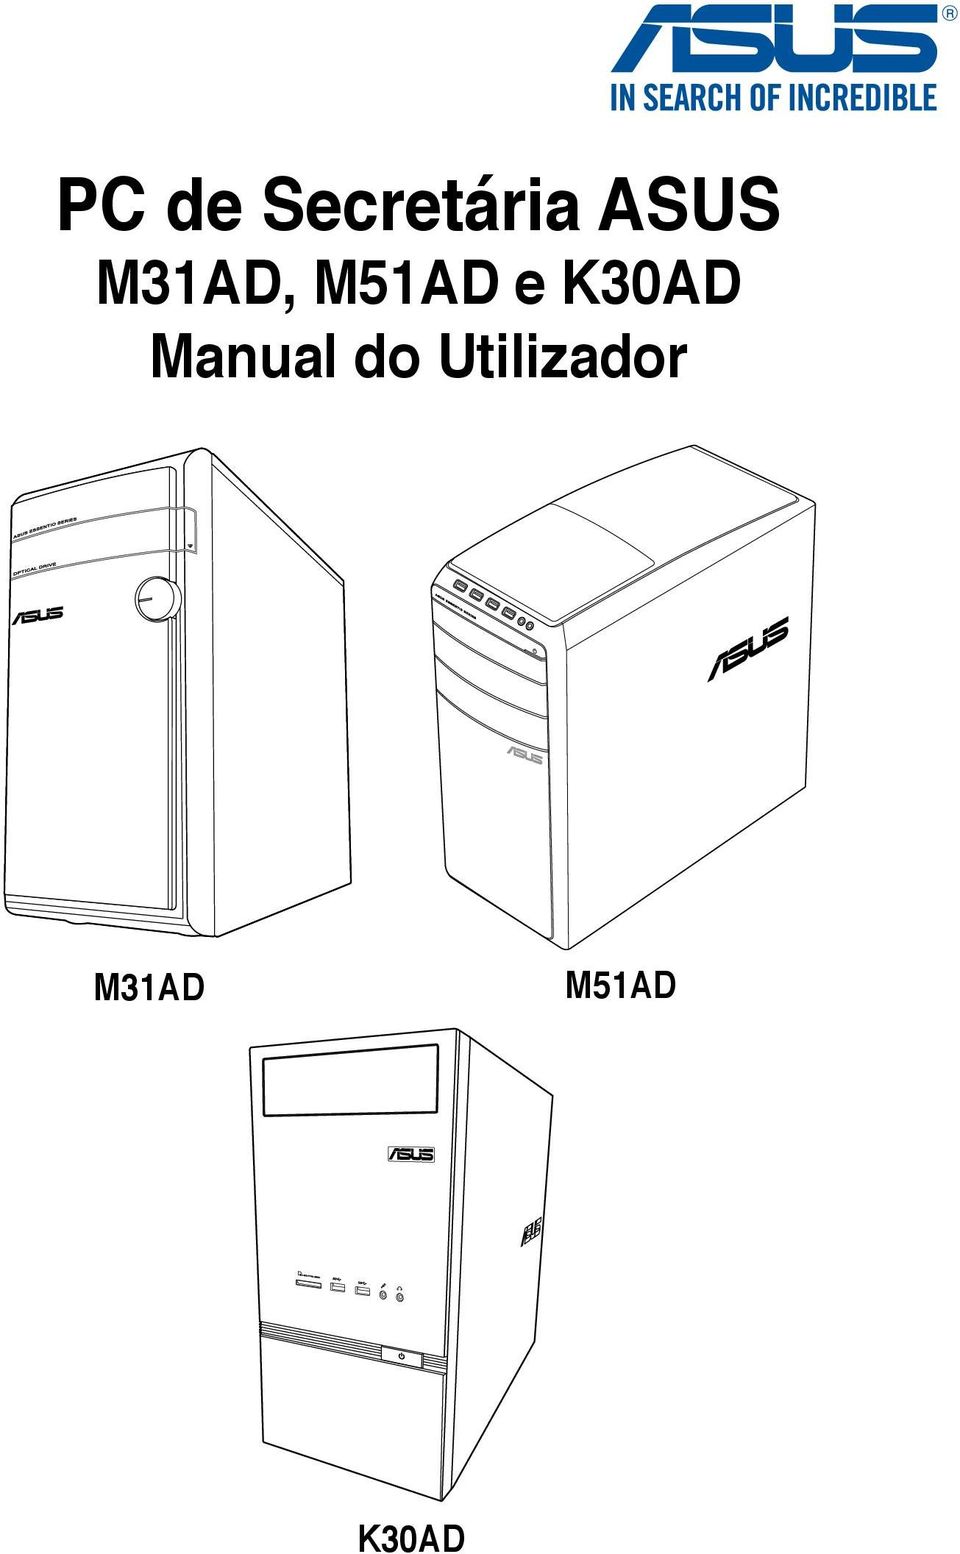 K30AD Manual do